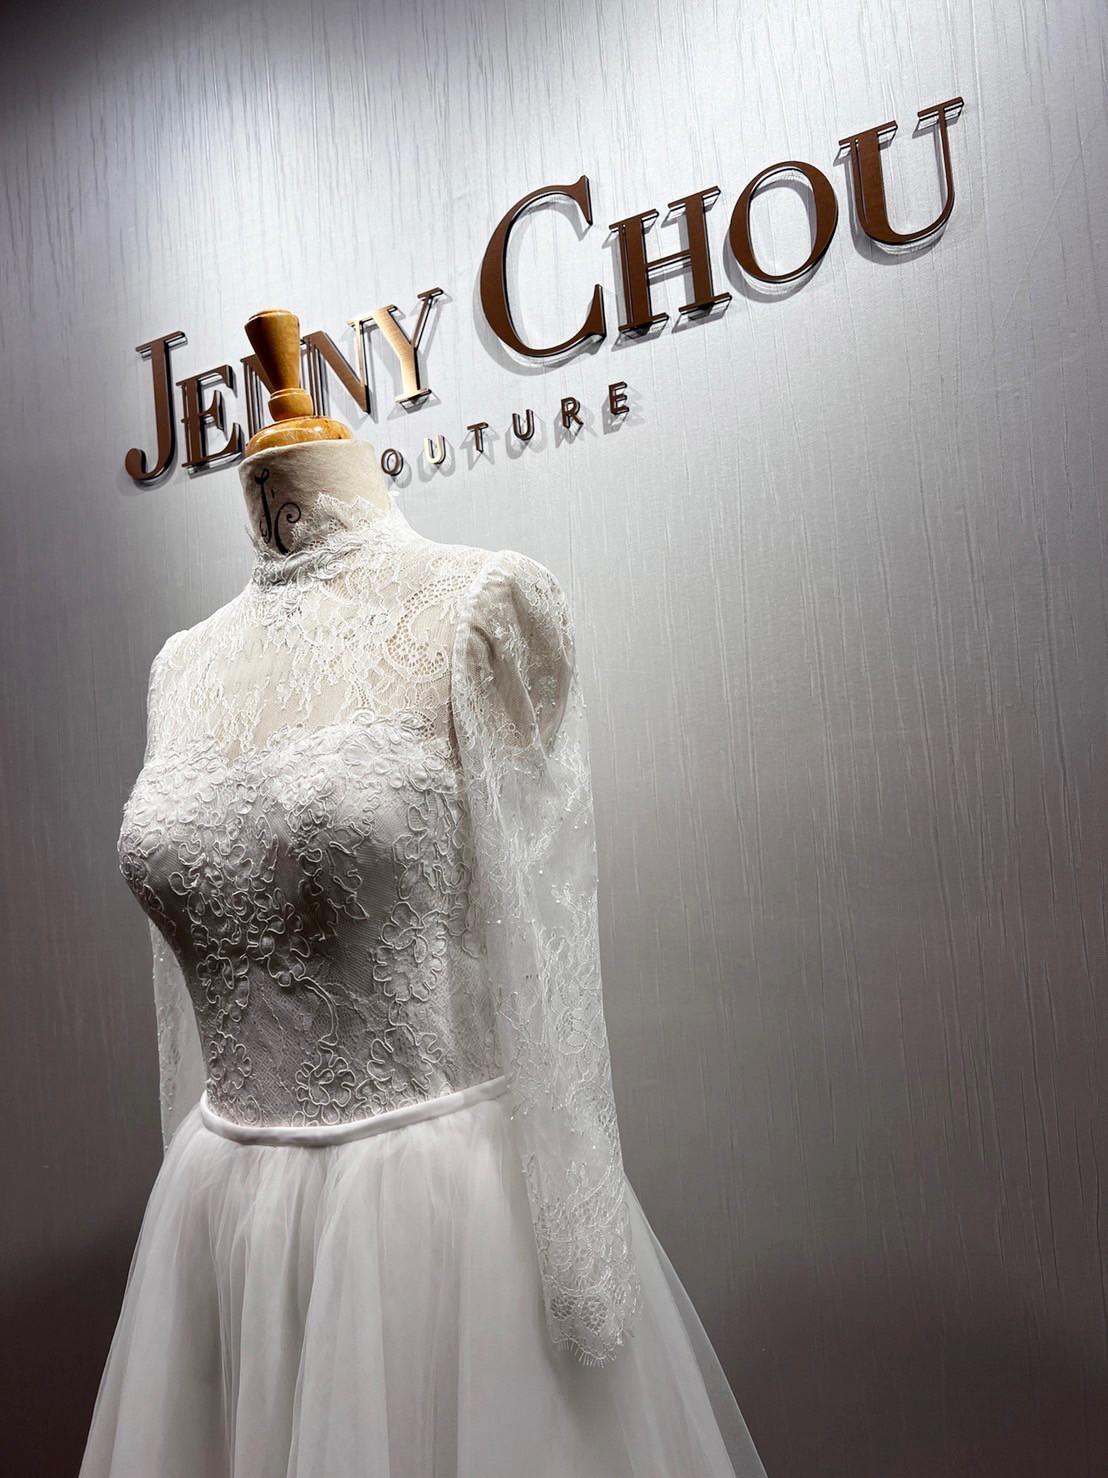 Jenny Chou 2-Way Wedding Gown New Wedding Dress Save 33% - Stillwhite